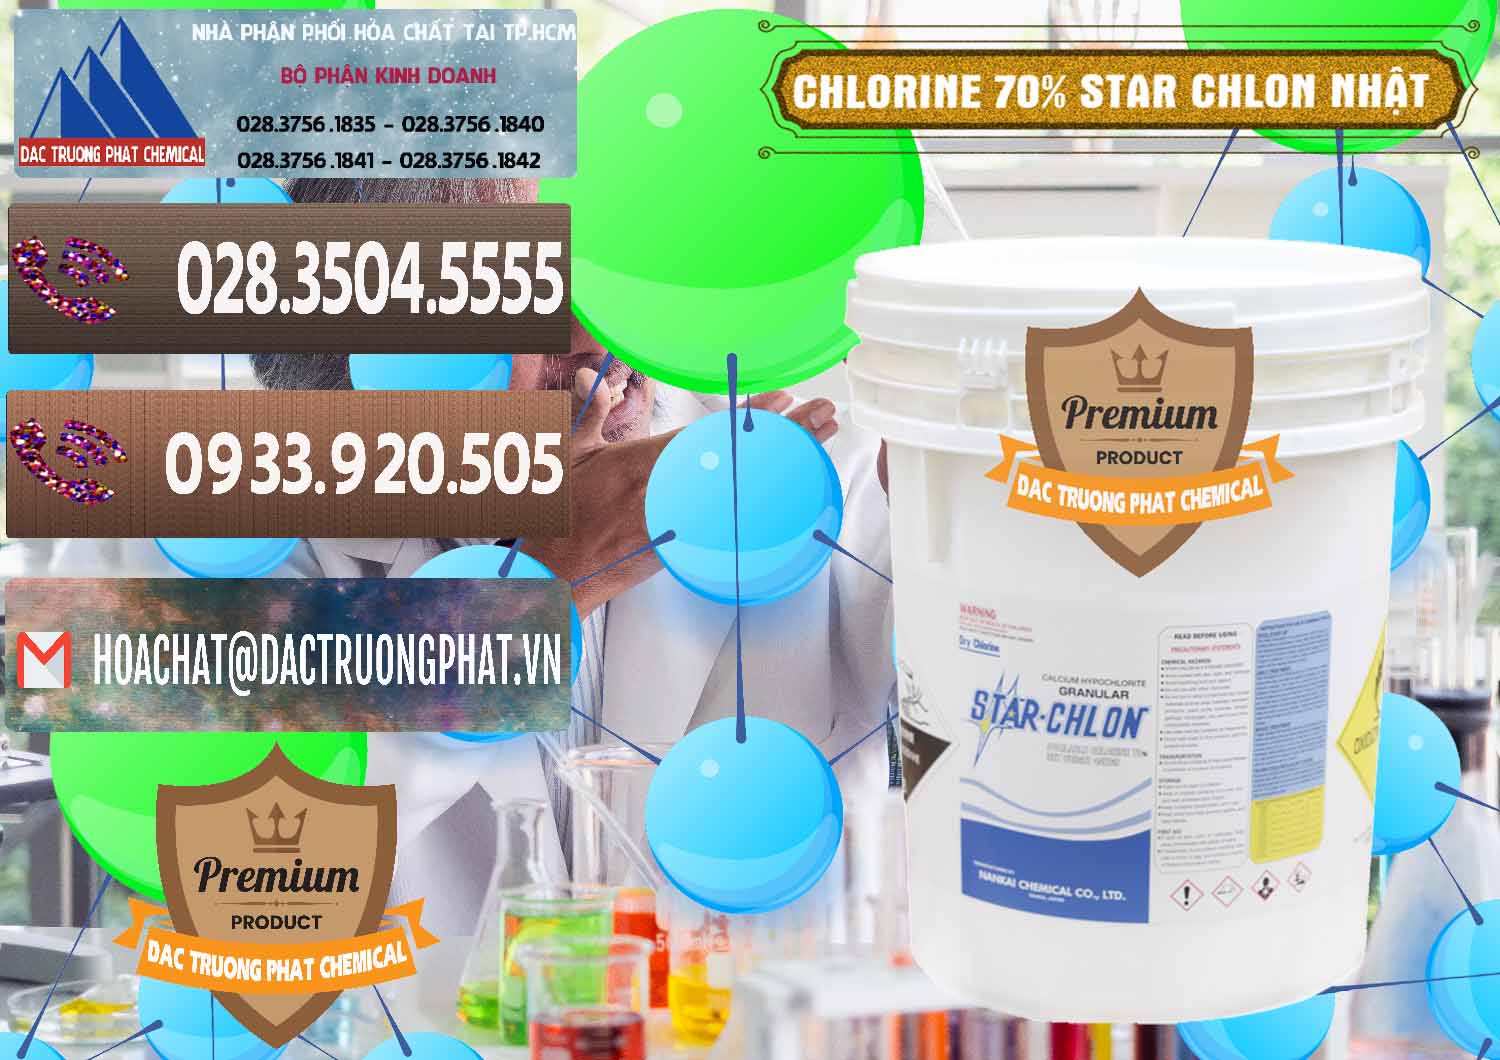 Nhà cung cấp ( bán ) Clorin – Chlorine 70% Star Chlon Nhật Bản Japan - 0243 - Công ty kinh doanh - phân phối hóa chất tại TP.HCM - hoachatviet.net